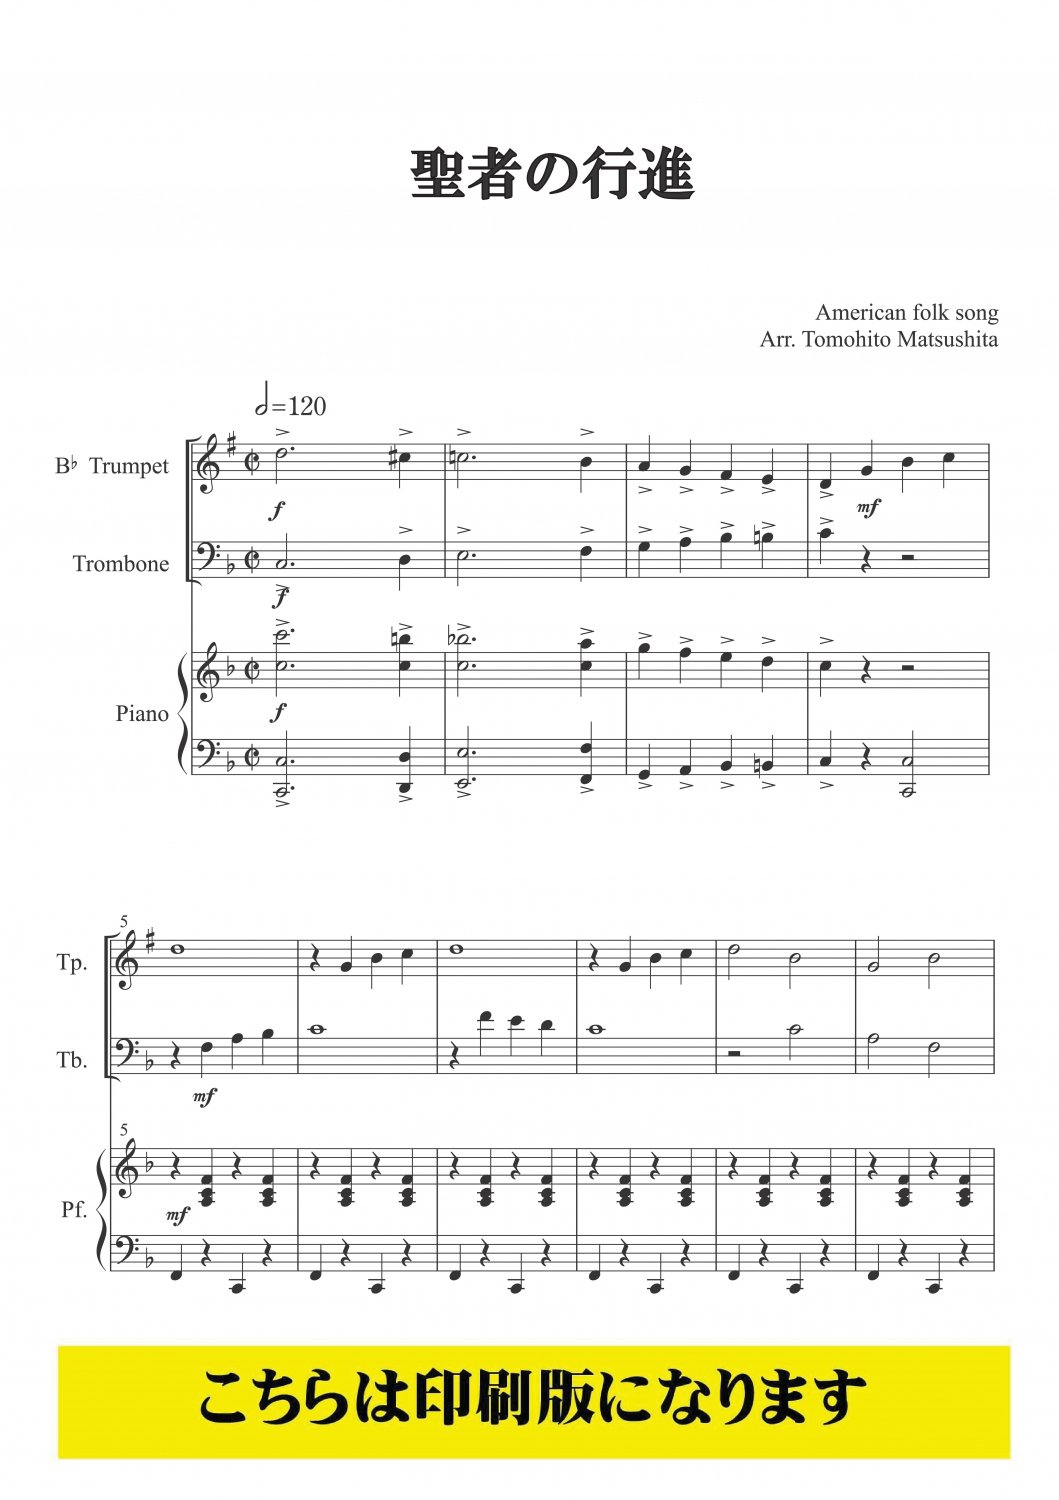 新刊楽譜 トランペット「メロディ練習曲集2」続・世界編75曲